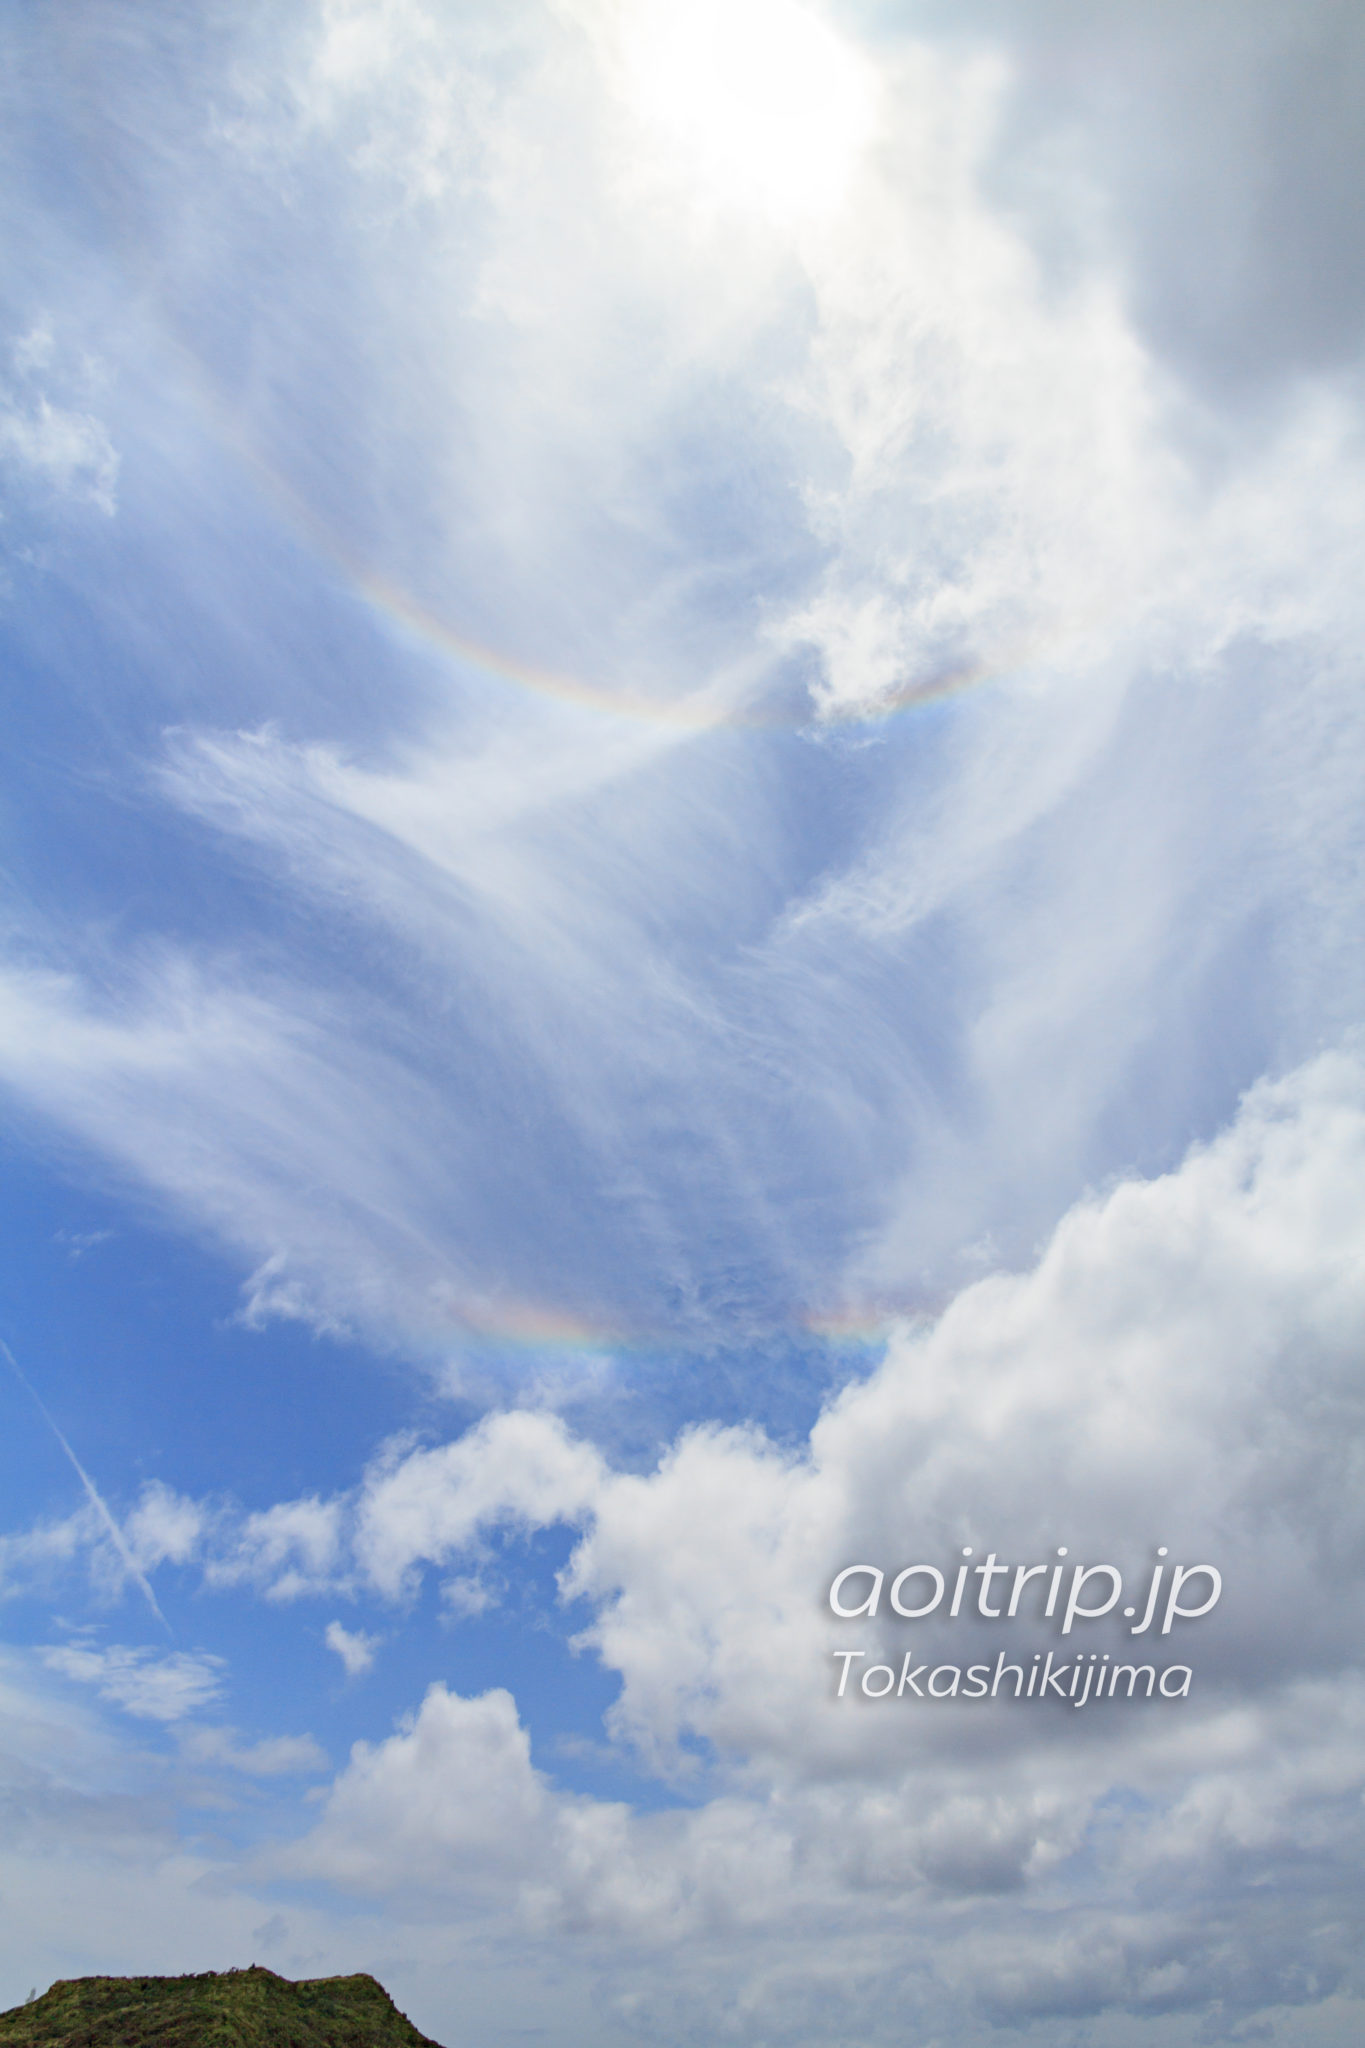 阿波連園地展望台で見た彩雲と暈